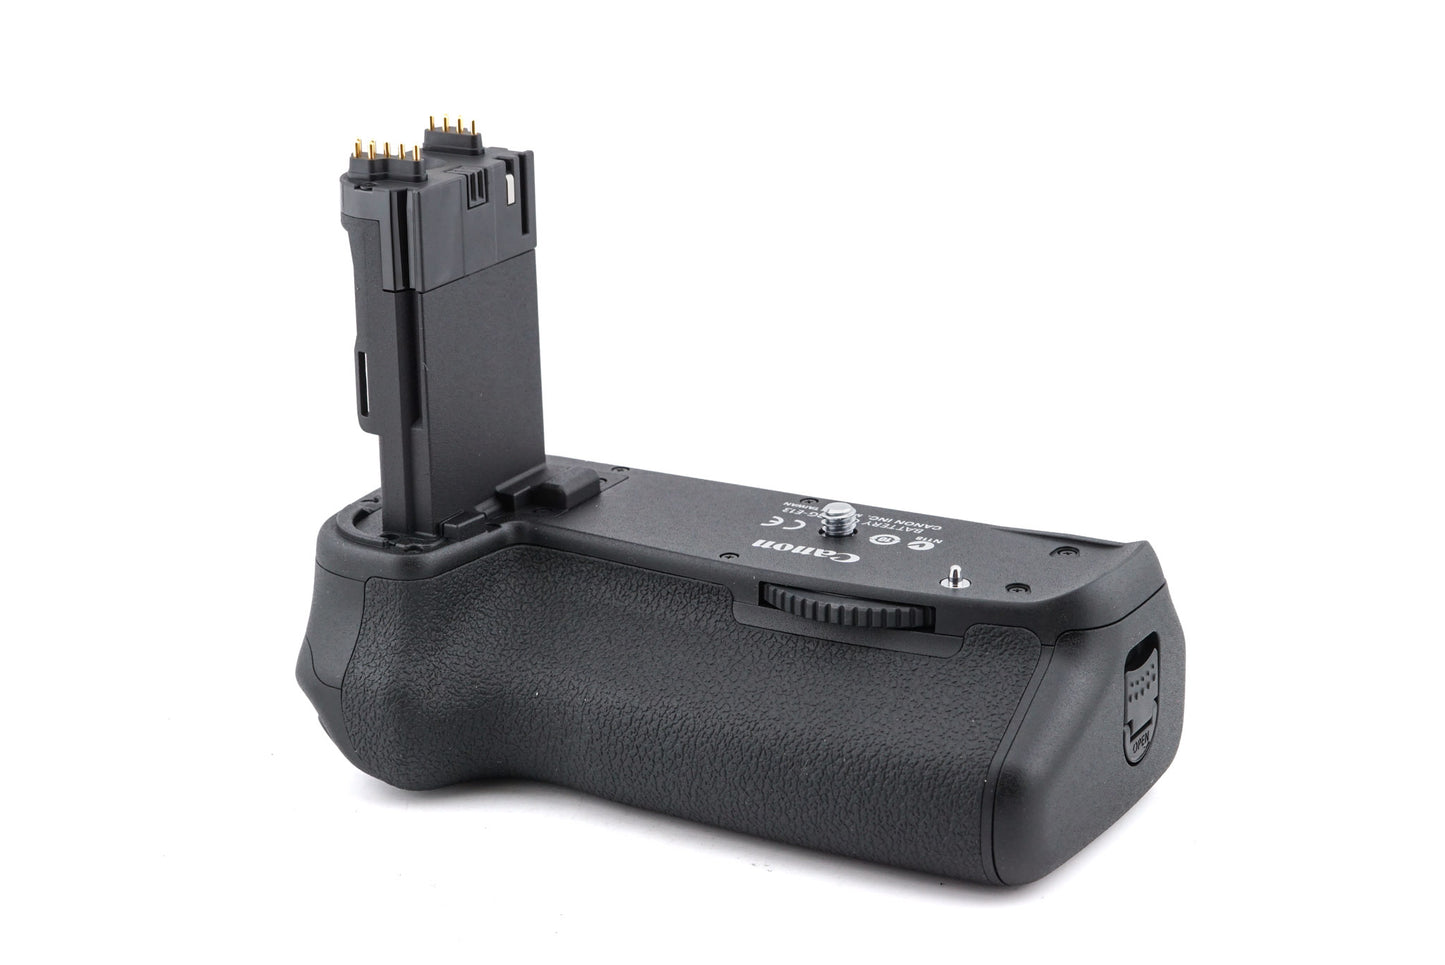 Canon BG-E13 Battery Grip